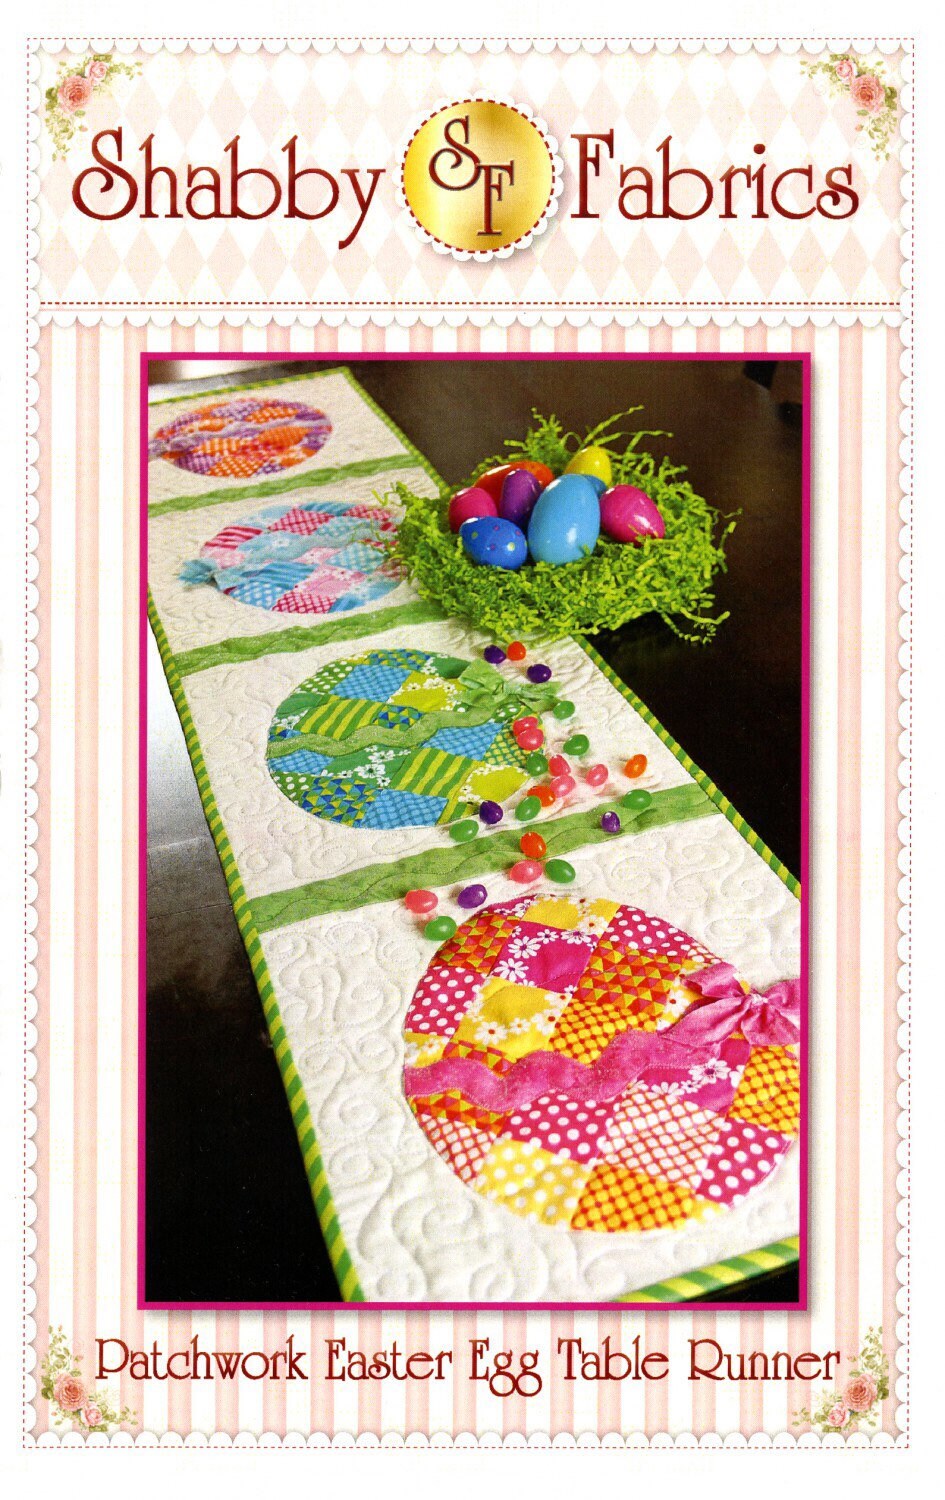 Patchwork Easter Egg Table Runner Pattern - Shabby Fabrics - Jennifer Bosworth - Easter Table Runner Pattern